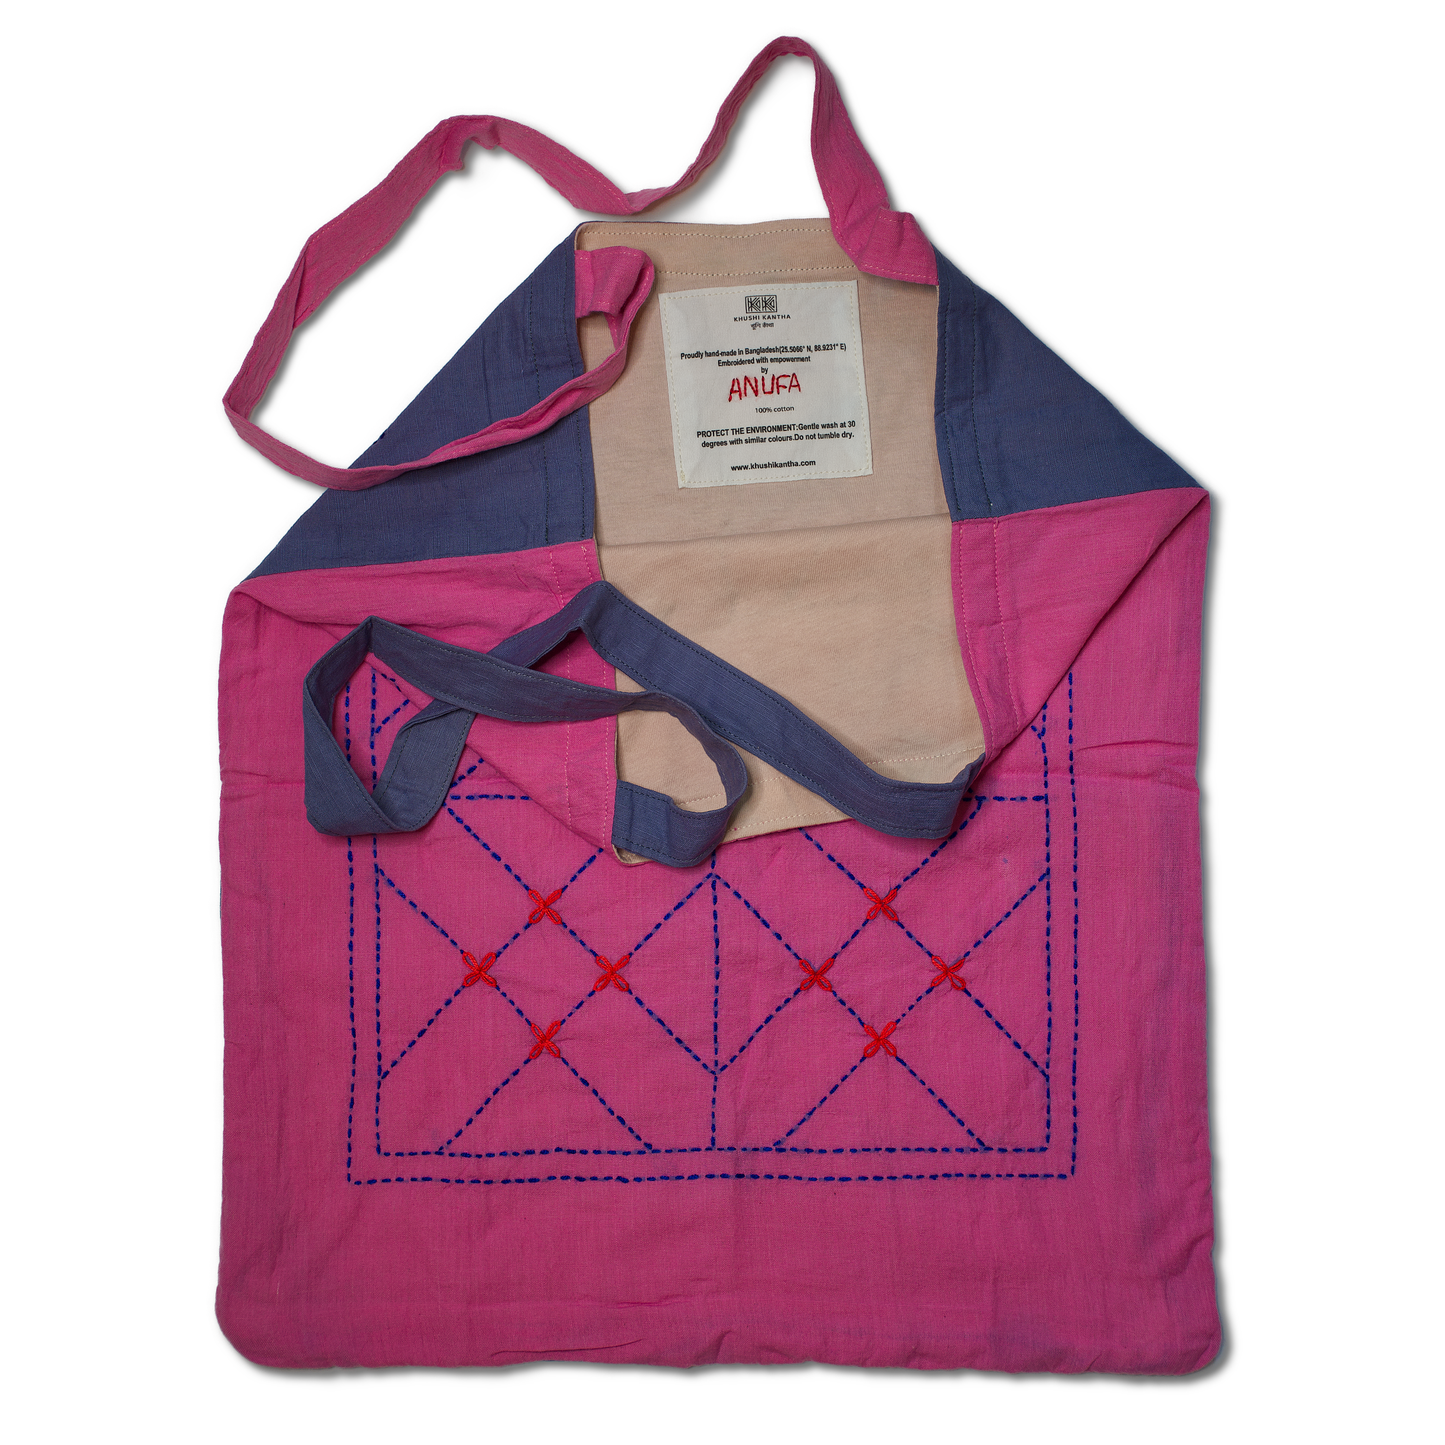 Tote Bags - Kurigram (Geometric) Design